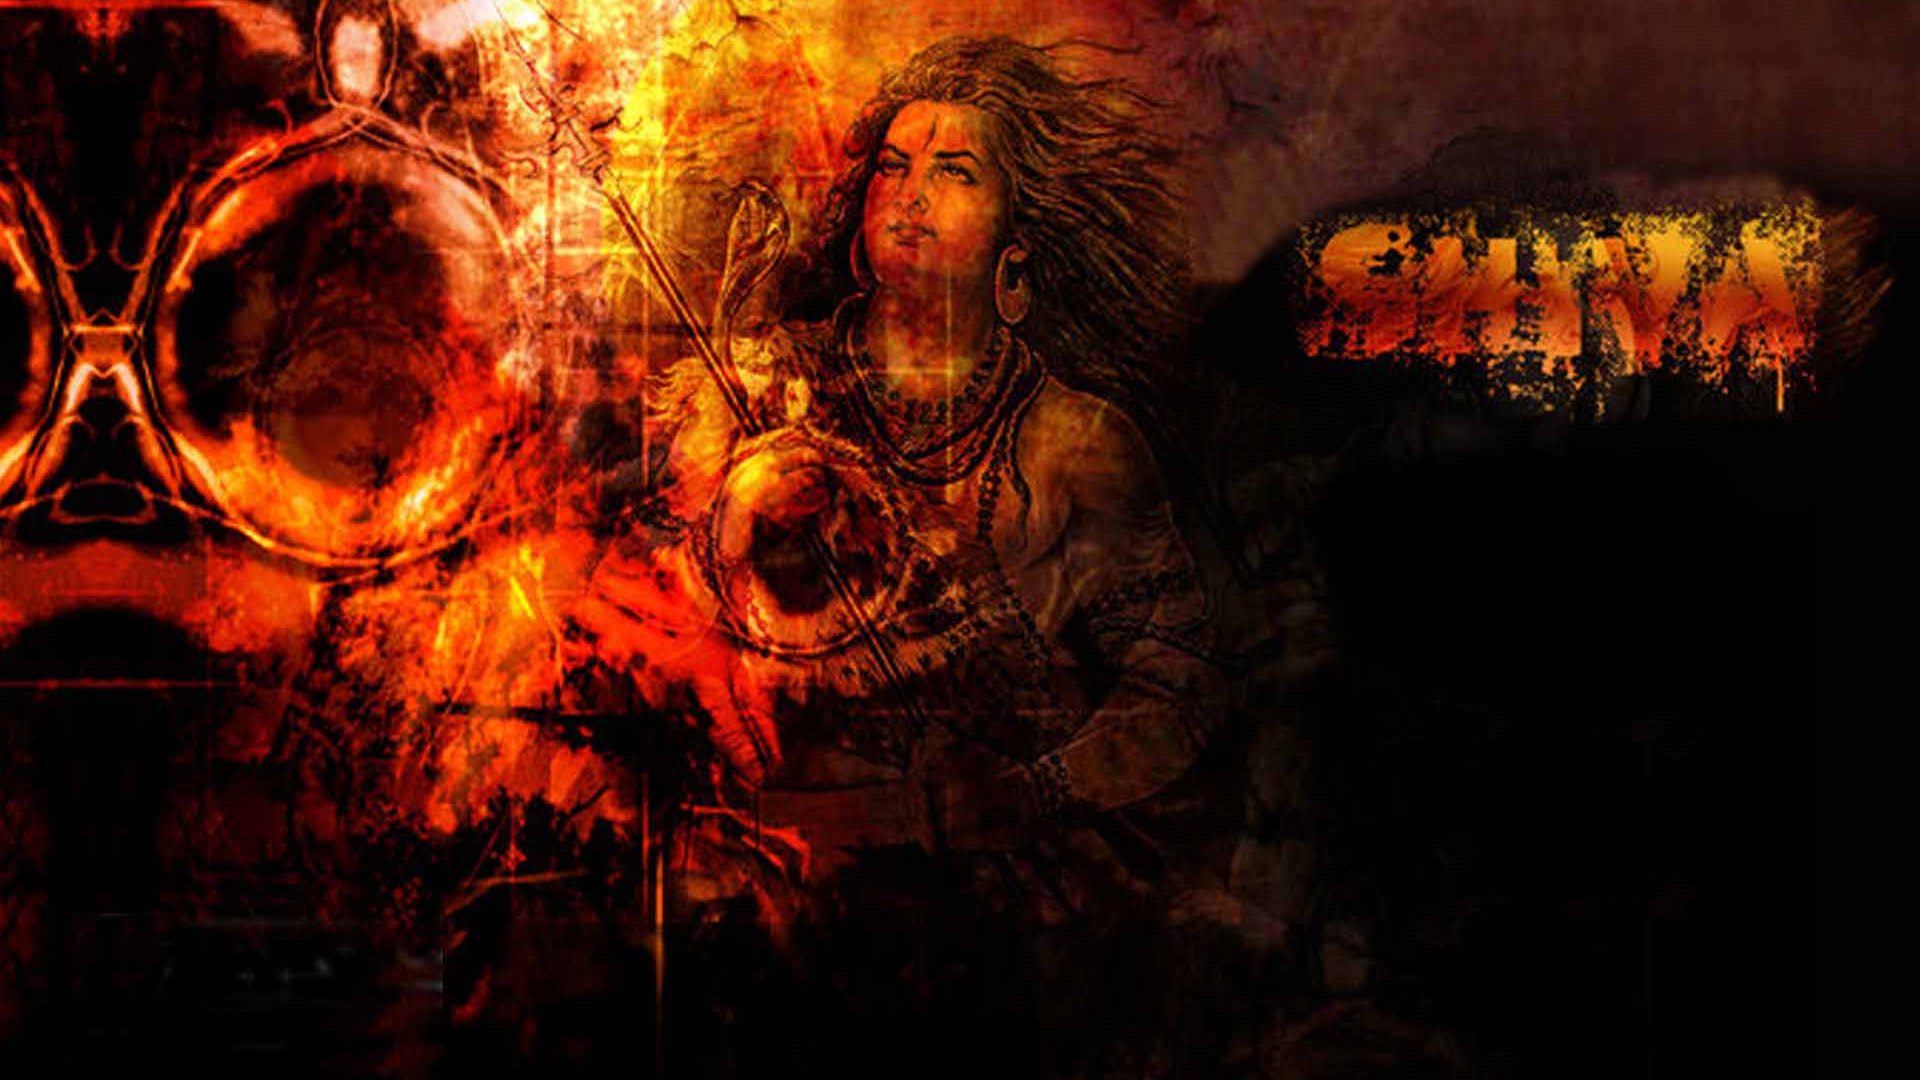 Shiva Animated Full Hd Image | Hindu Gods and Goddesses